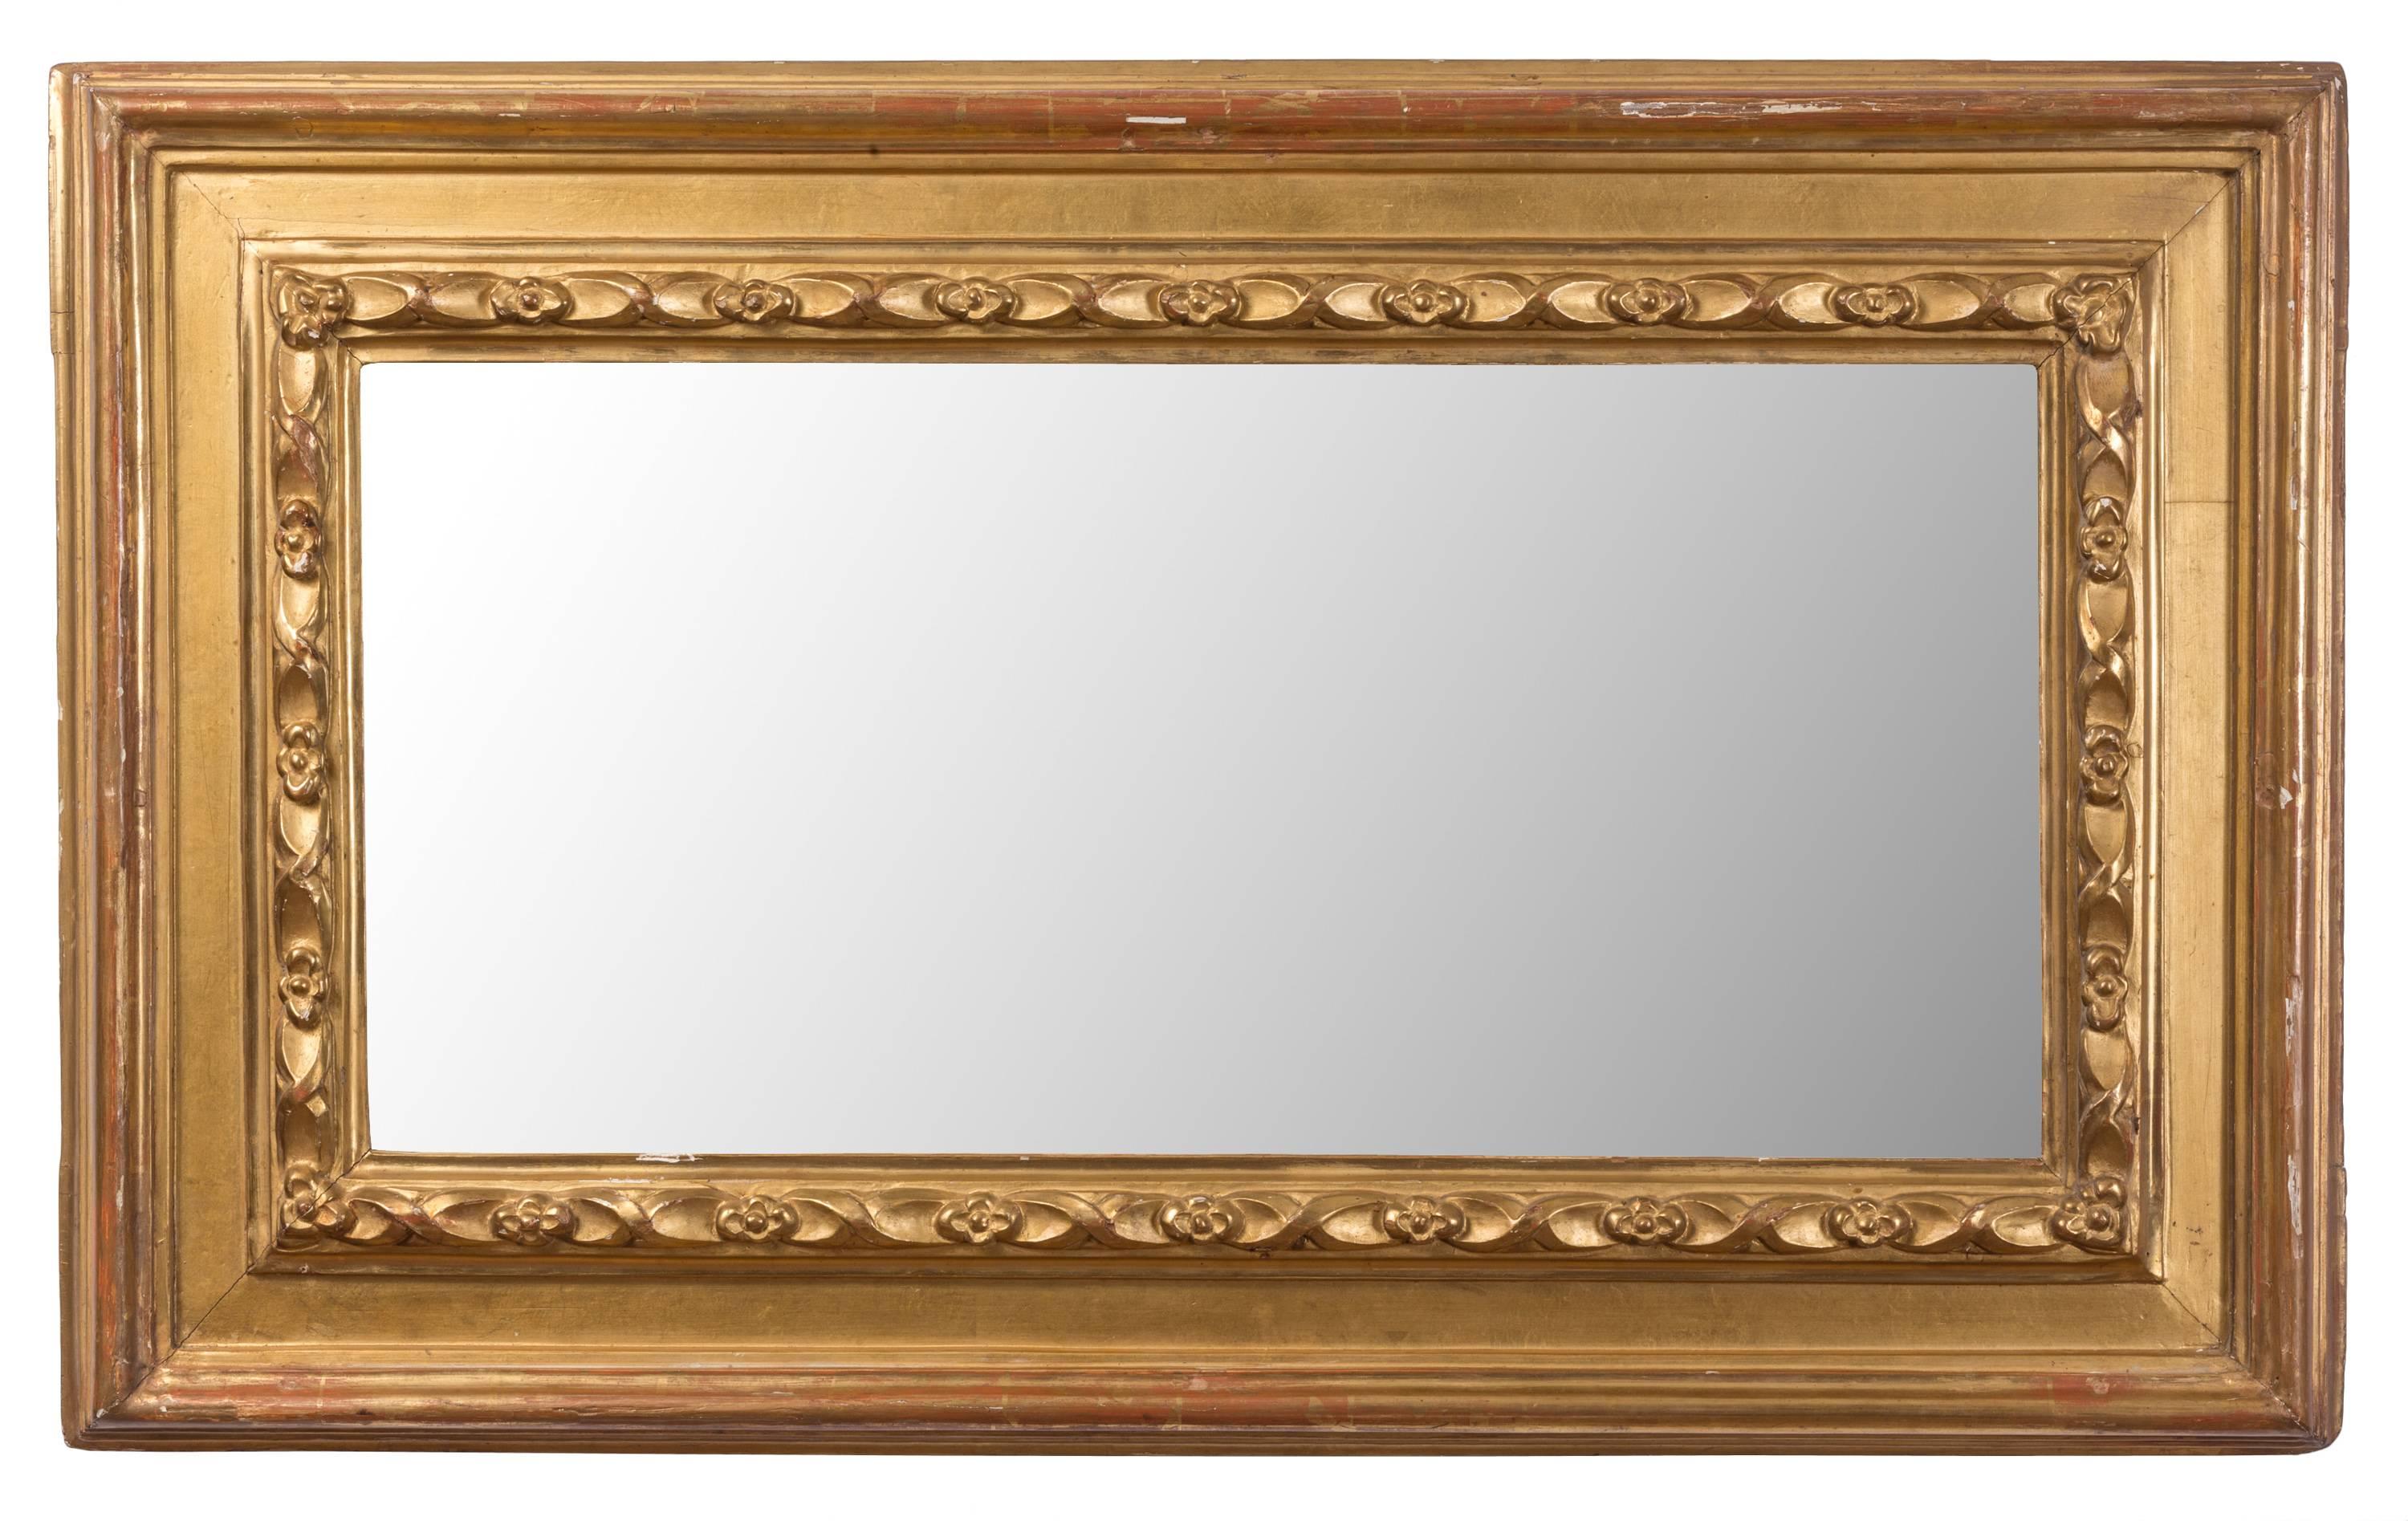 Cette paire assortie de miroirs espagnols du XIXe siècle présente des cadres en bois doré sculpté avec un motif simple de fleurs et de rubans en bordure. Les miroirs ont des crochets à deux endroits au dos, et peuvent être montés verticalement ou